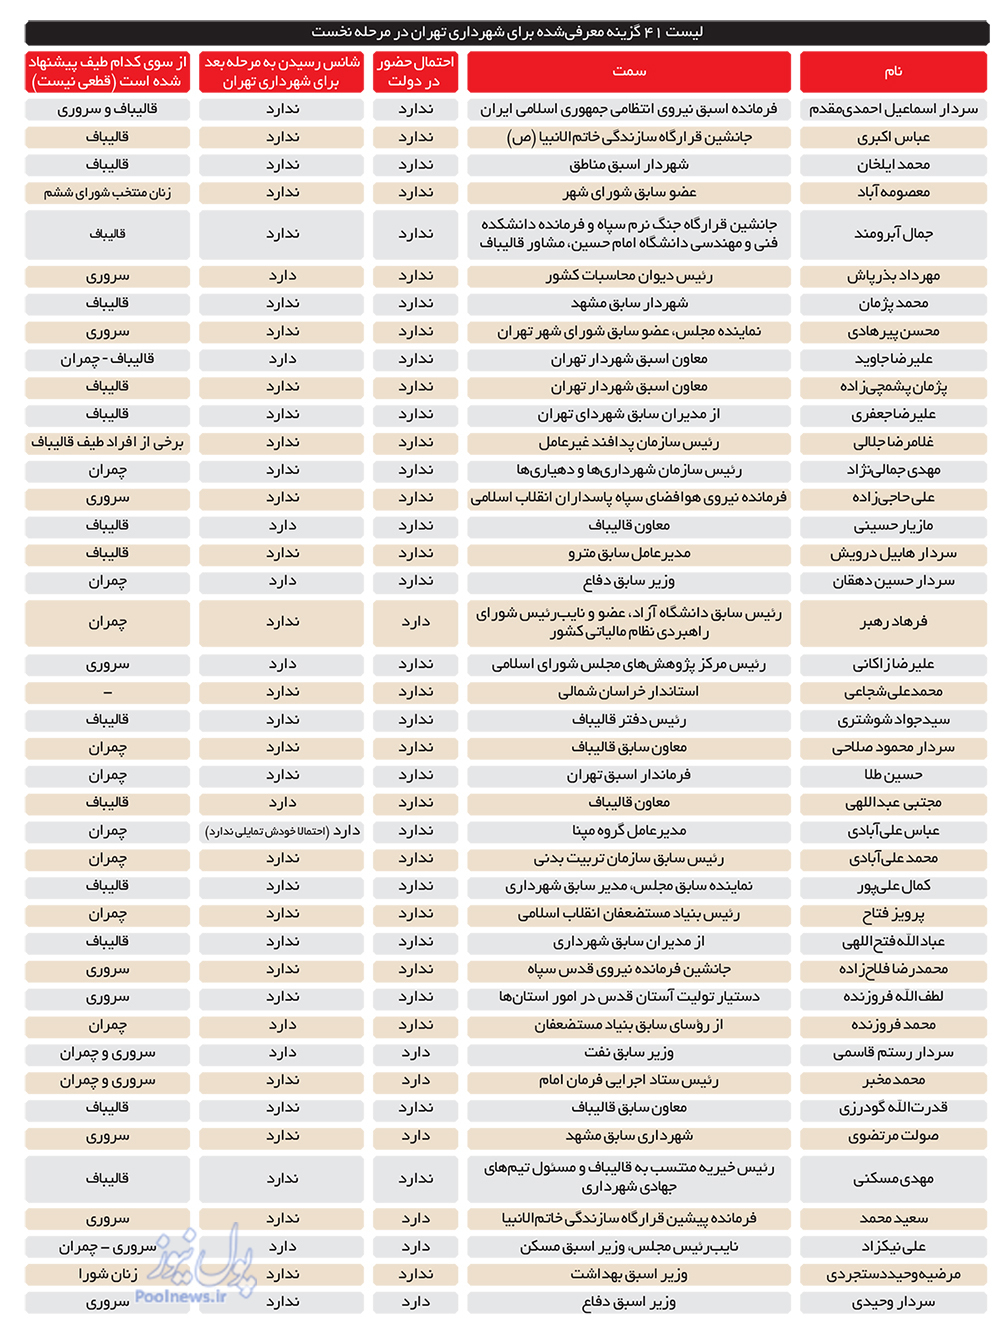 رونمایی از اولین لیست شهرداران تهران +سوابق